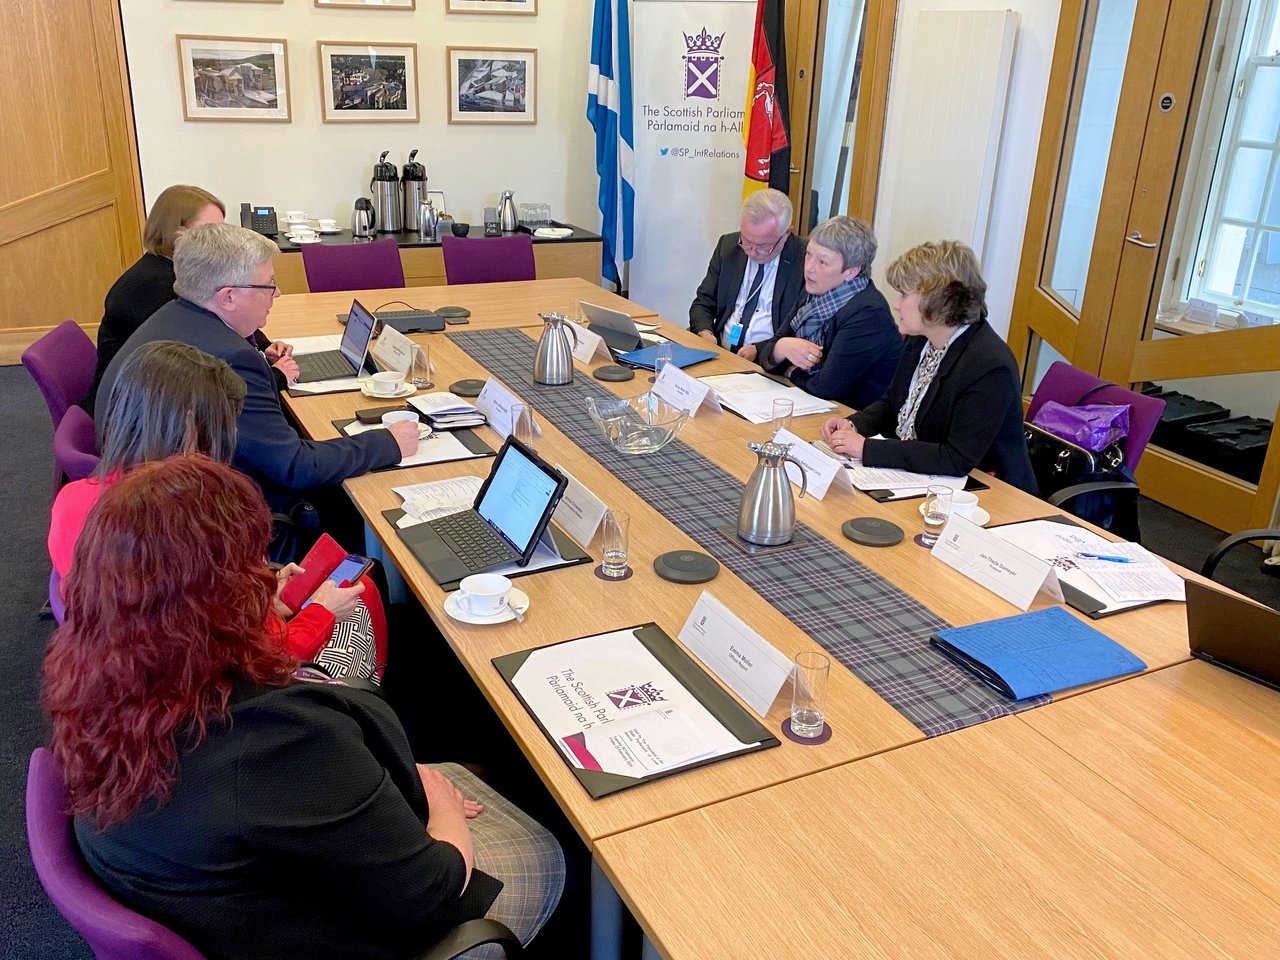 Die Präsidentin tauscht sich mit Presiding Officer Johnstone und zahlreichen anderen Akteurinnen und Akteuren unter anderem über die Funktionsweise des schottischen Parlaments und aktuellen politischen Themen aus.